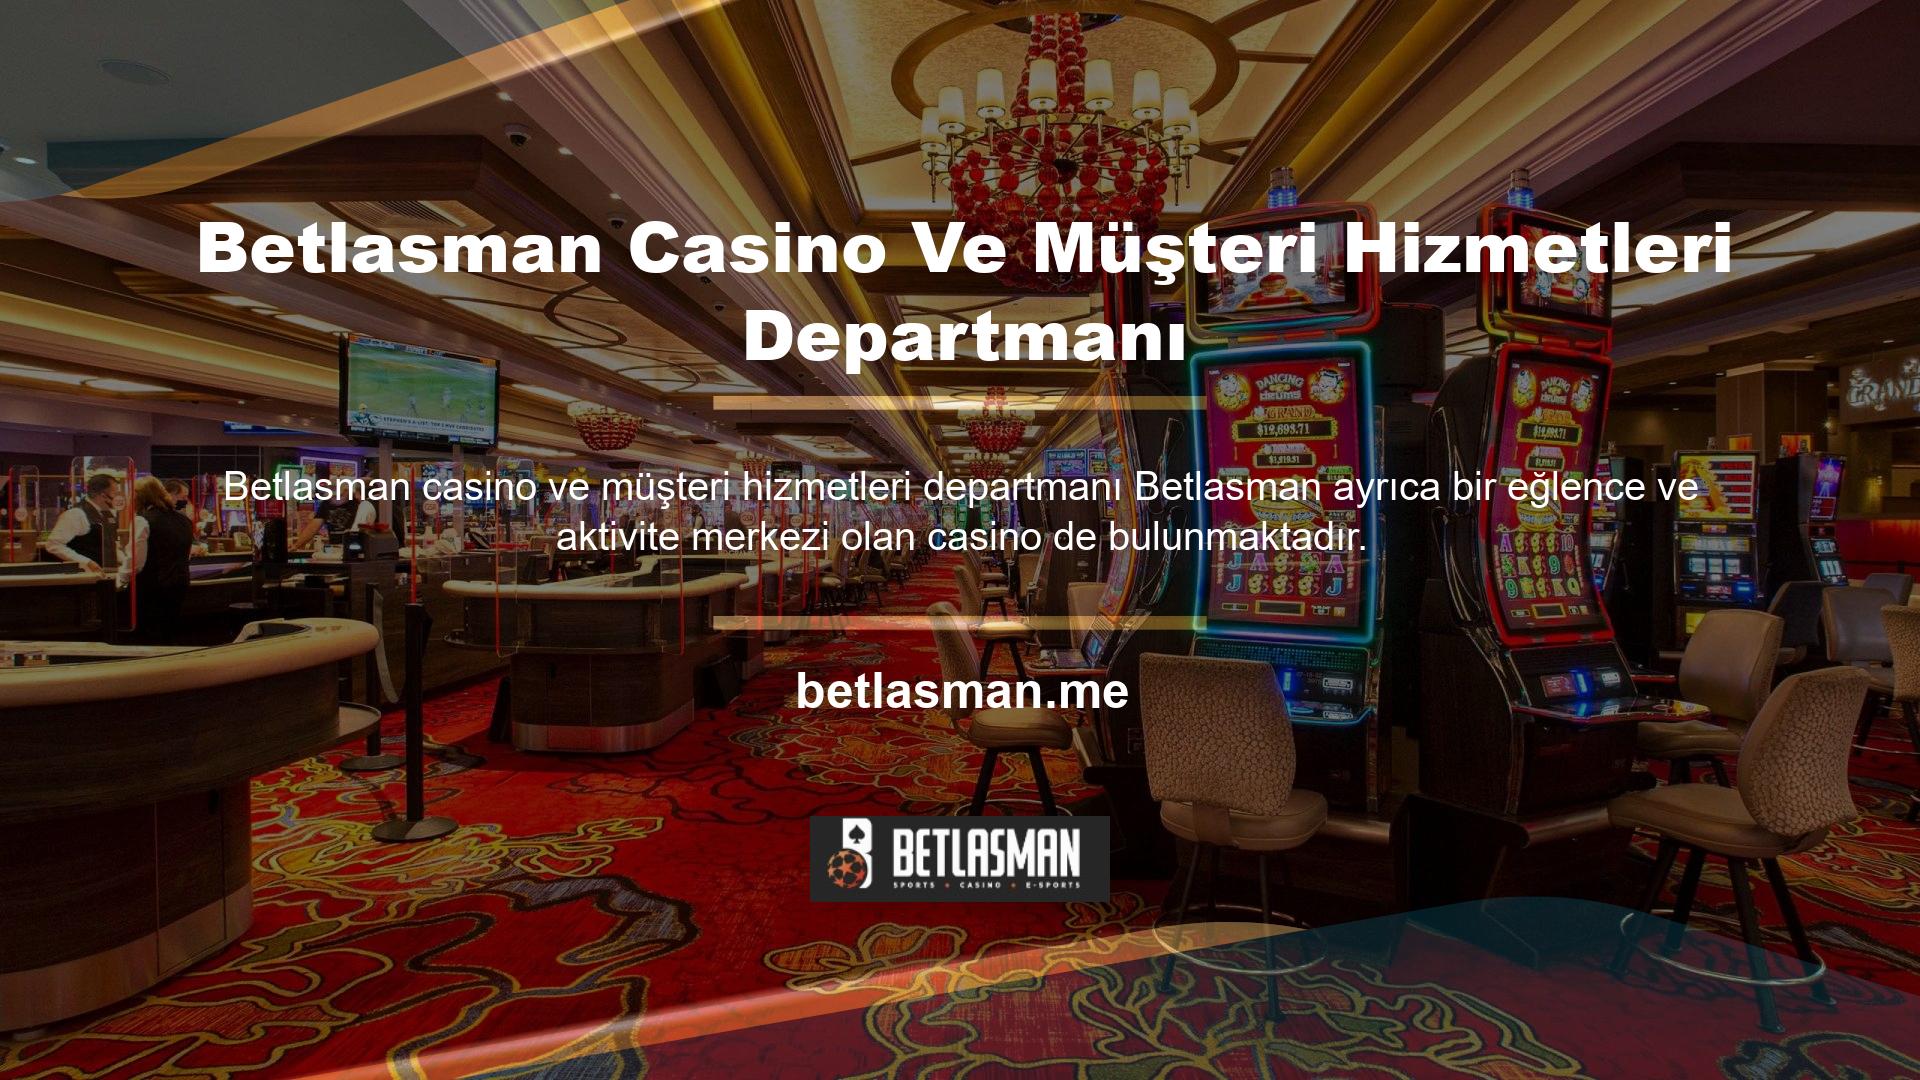 Betlasman geniş casino oyunları yelpazesi, şık ve kullanıcı dostu tasarımlarıyla karakterize edilir